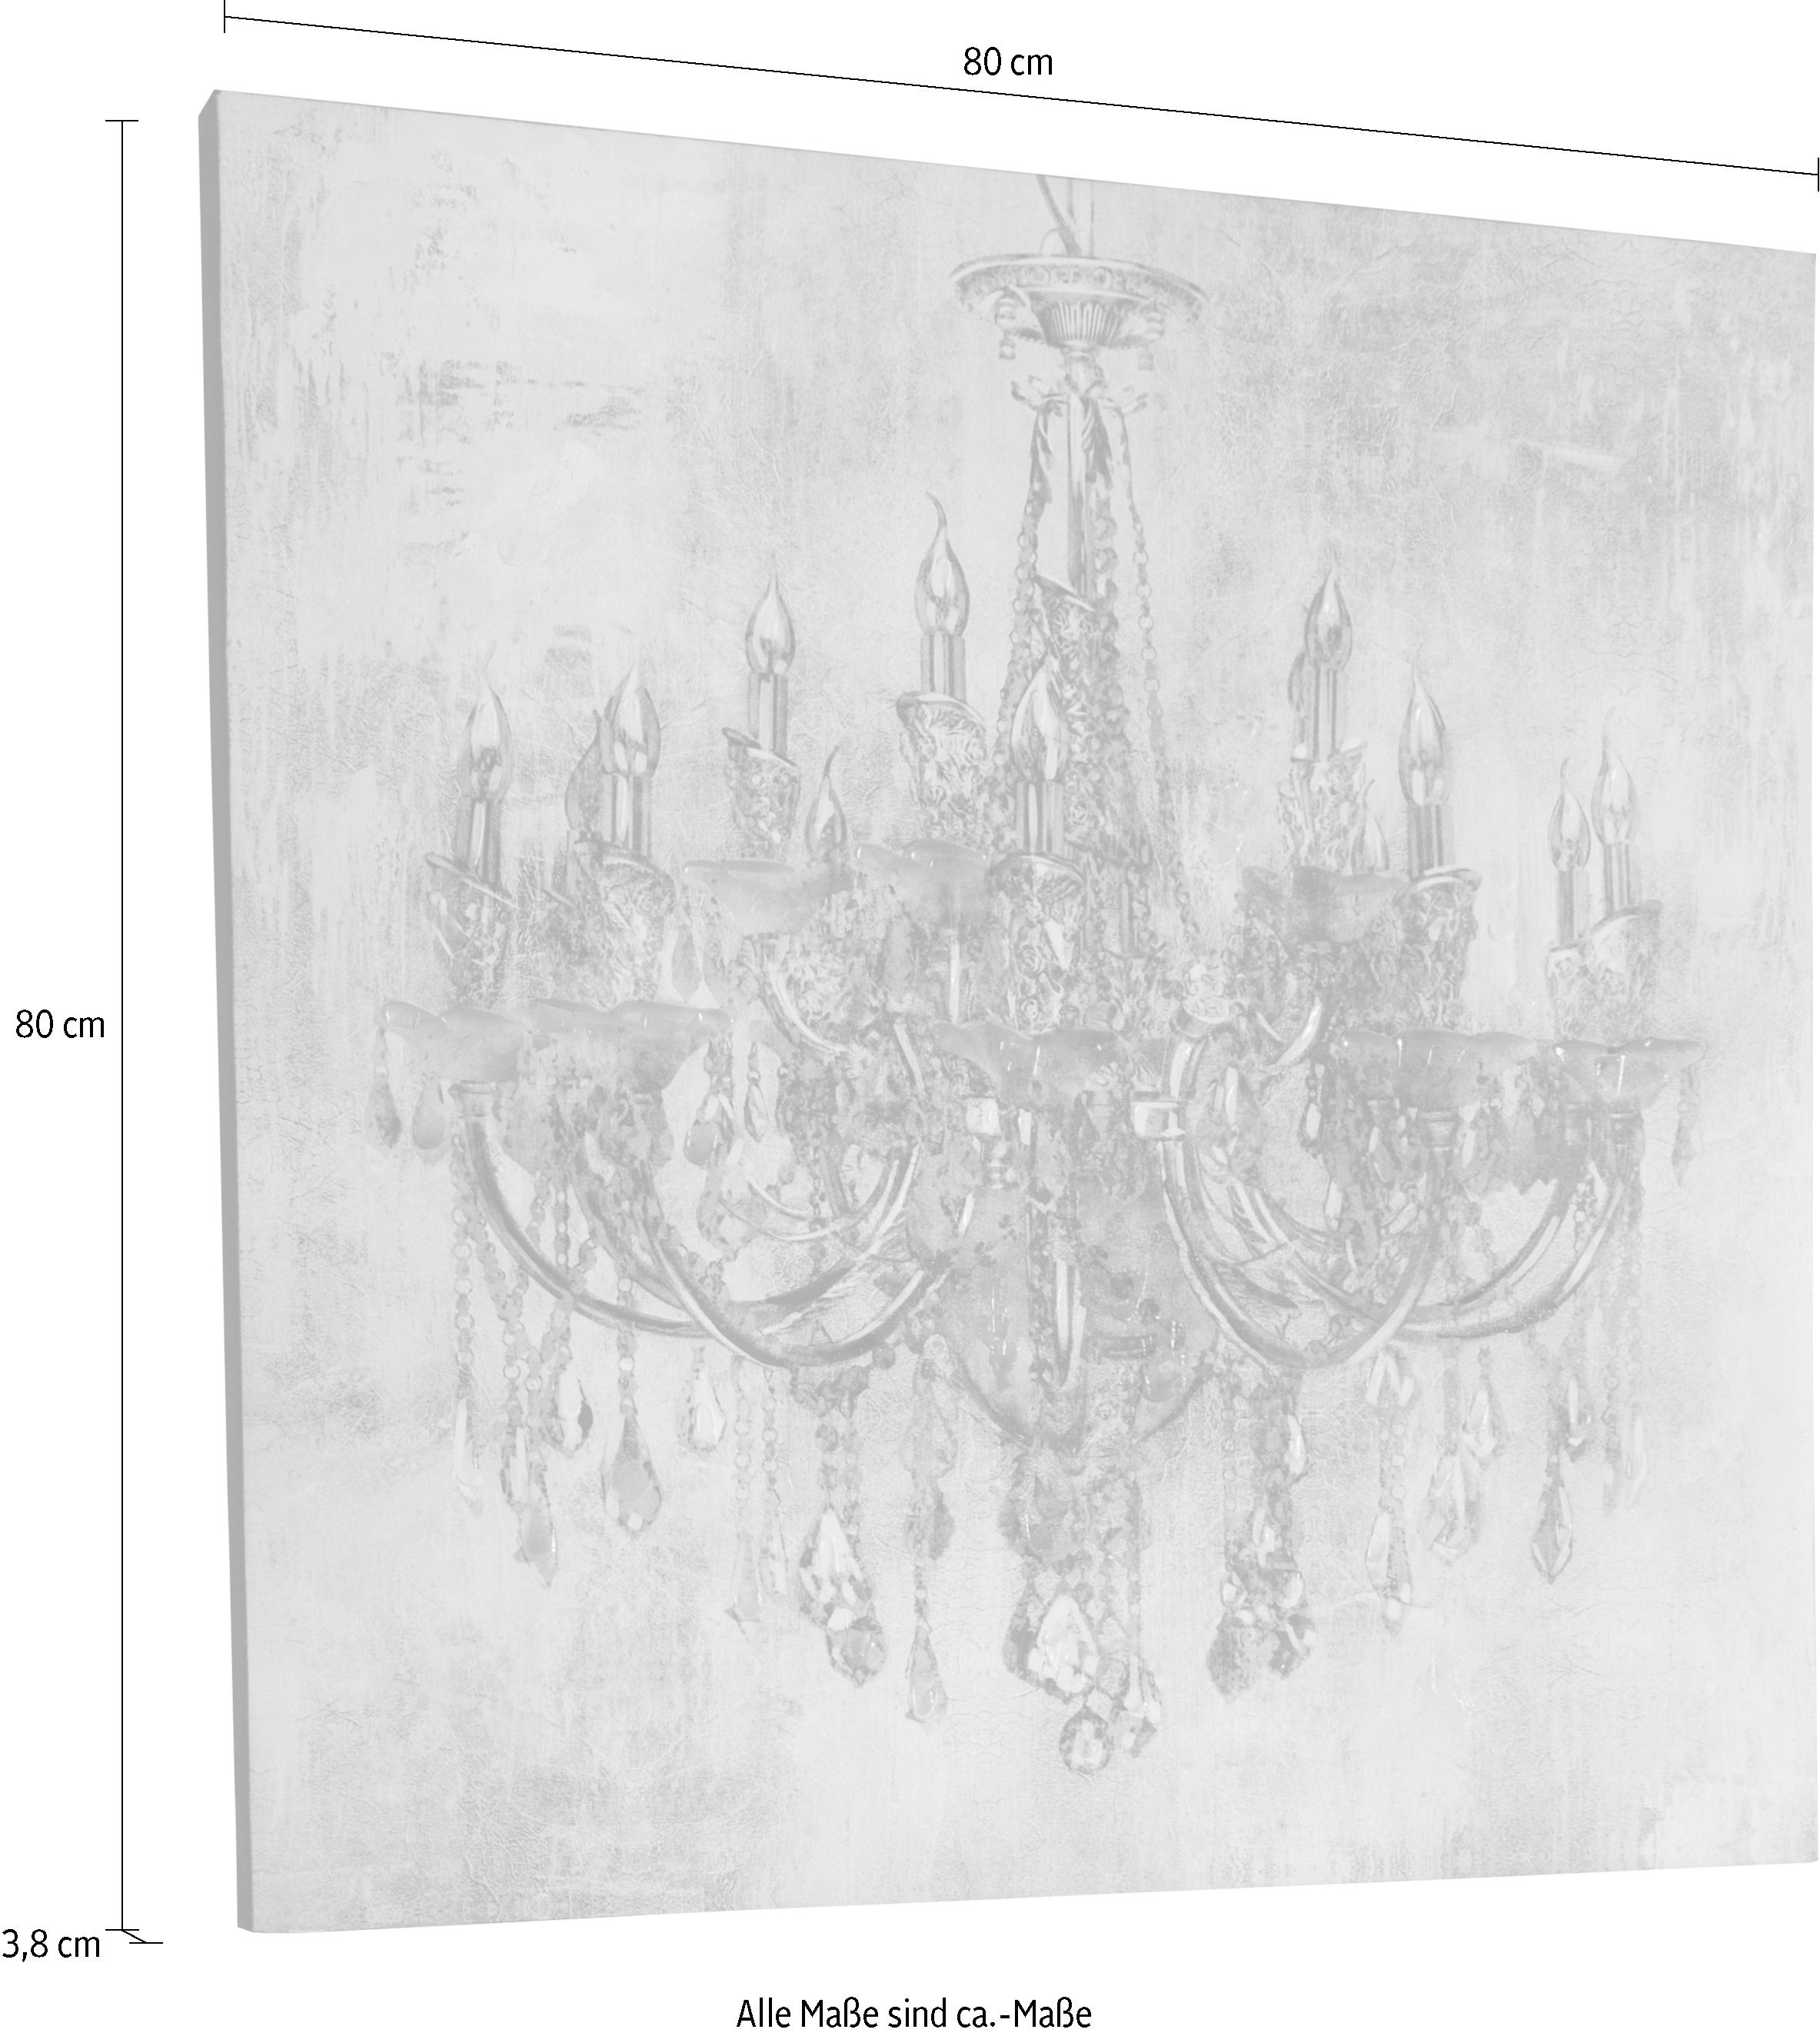 Myflair Möbel & Accessoires Ölbild Gemälde, Motiv 80x80 Bild Kronleuchter, »Candela«, kaufen cm, Wohnzimmer jetzt auf Leinwand